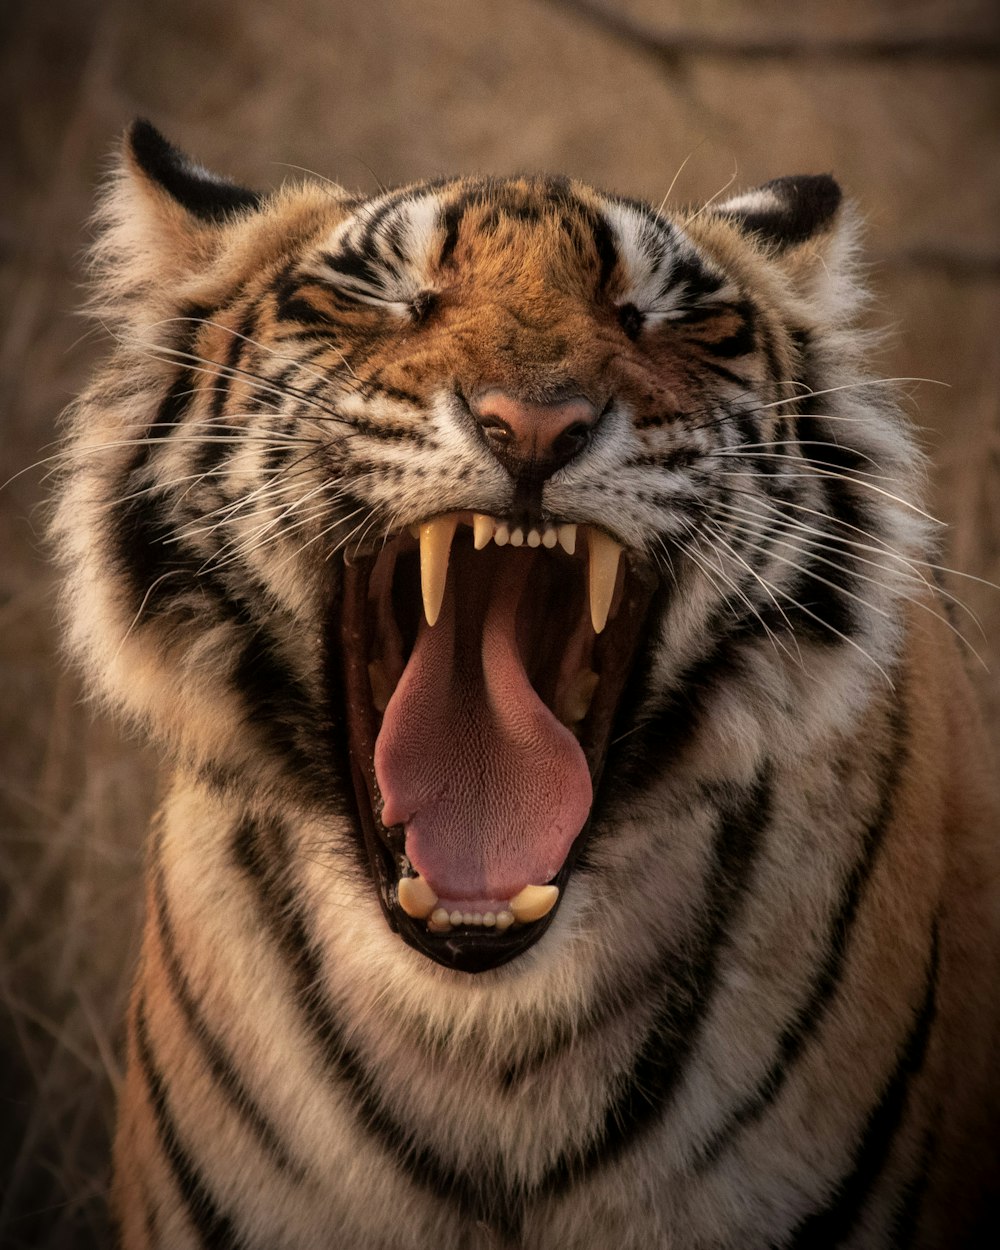 tigre marrom e preto mostrando a língua